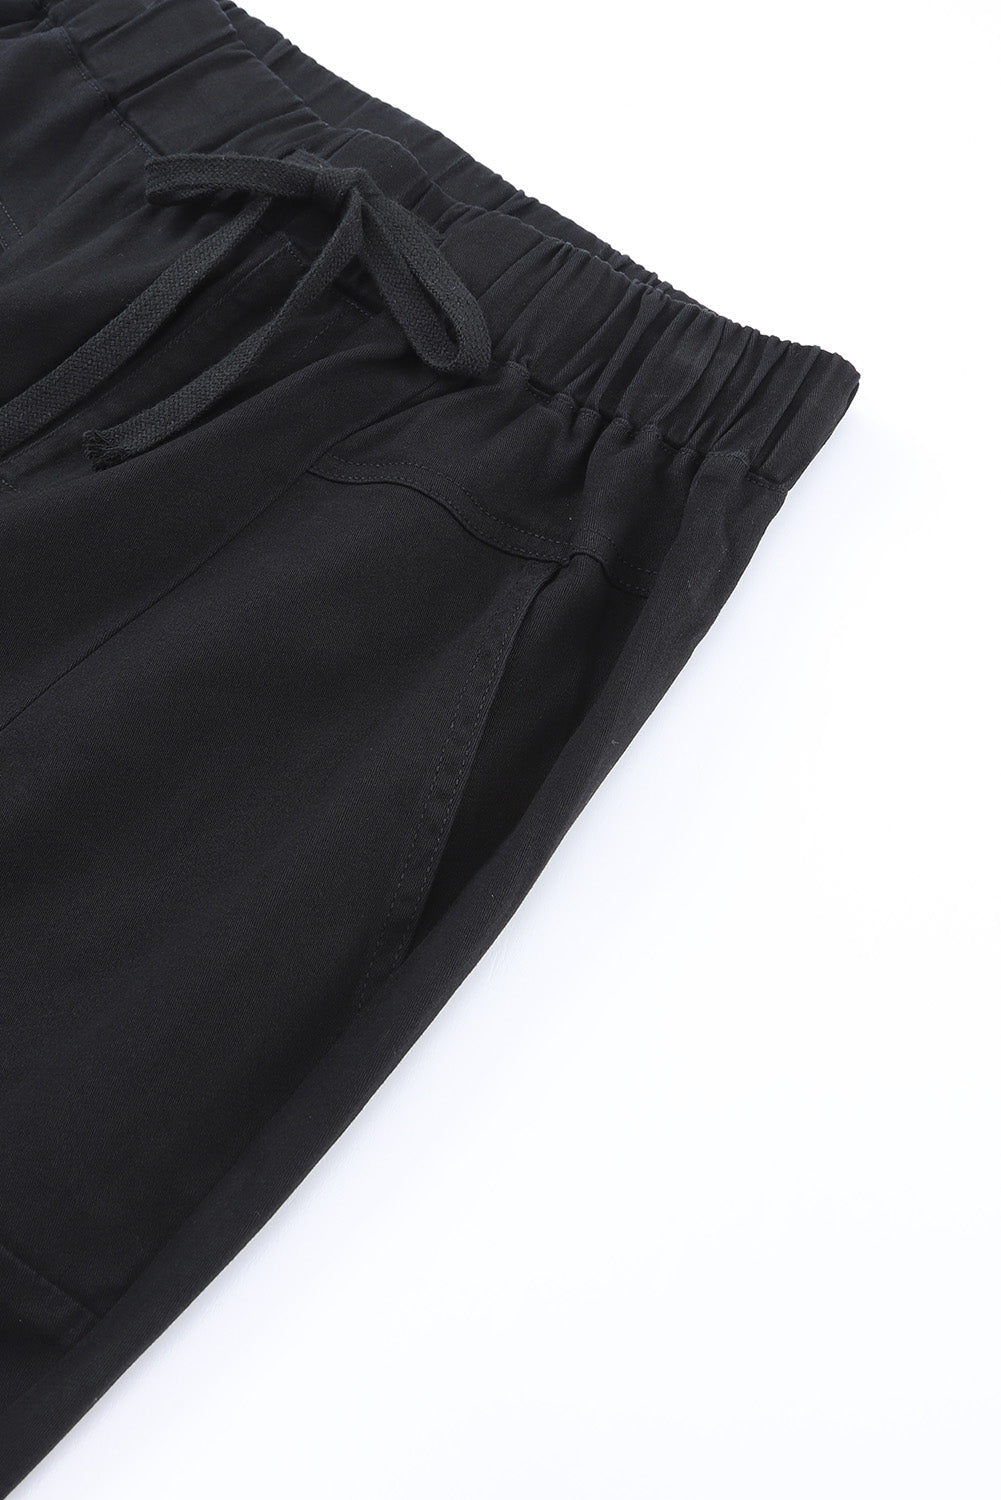 Pantalon noir taille haute avec poches et cordon de serrage